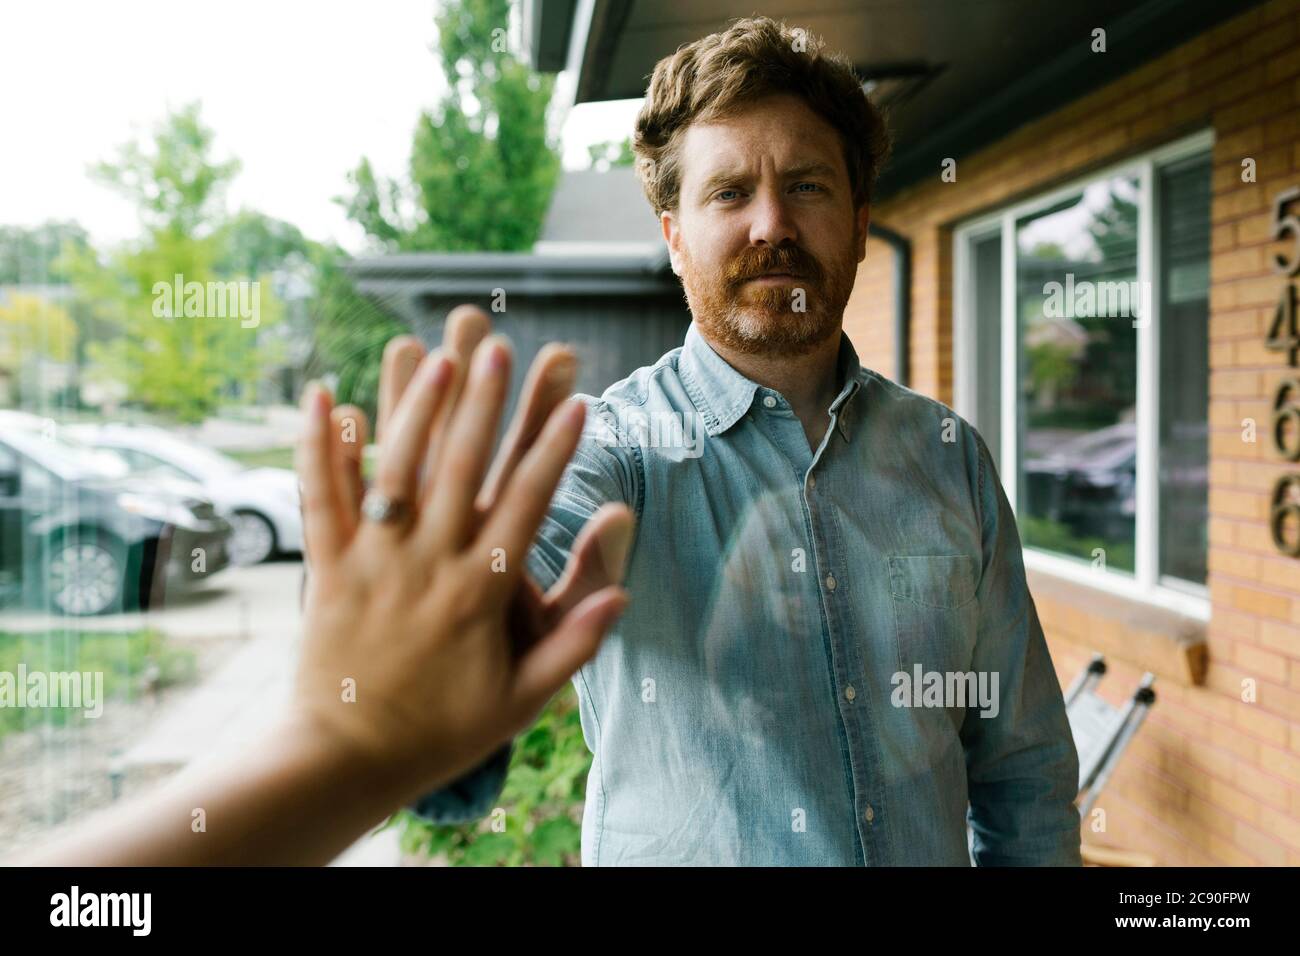 États-Unis, Utah, Salt Lake City, épouse et mari se touchant les mains par la fenêtre Banque D'Images